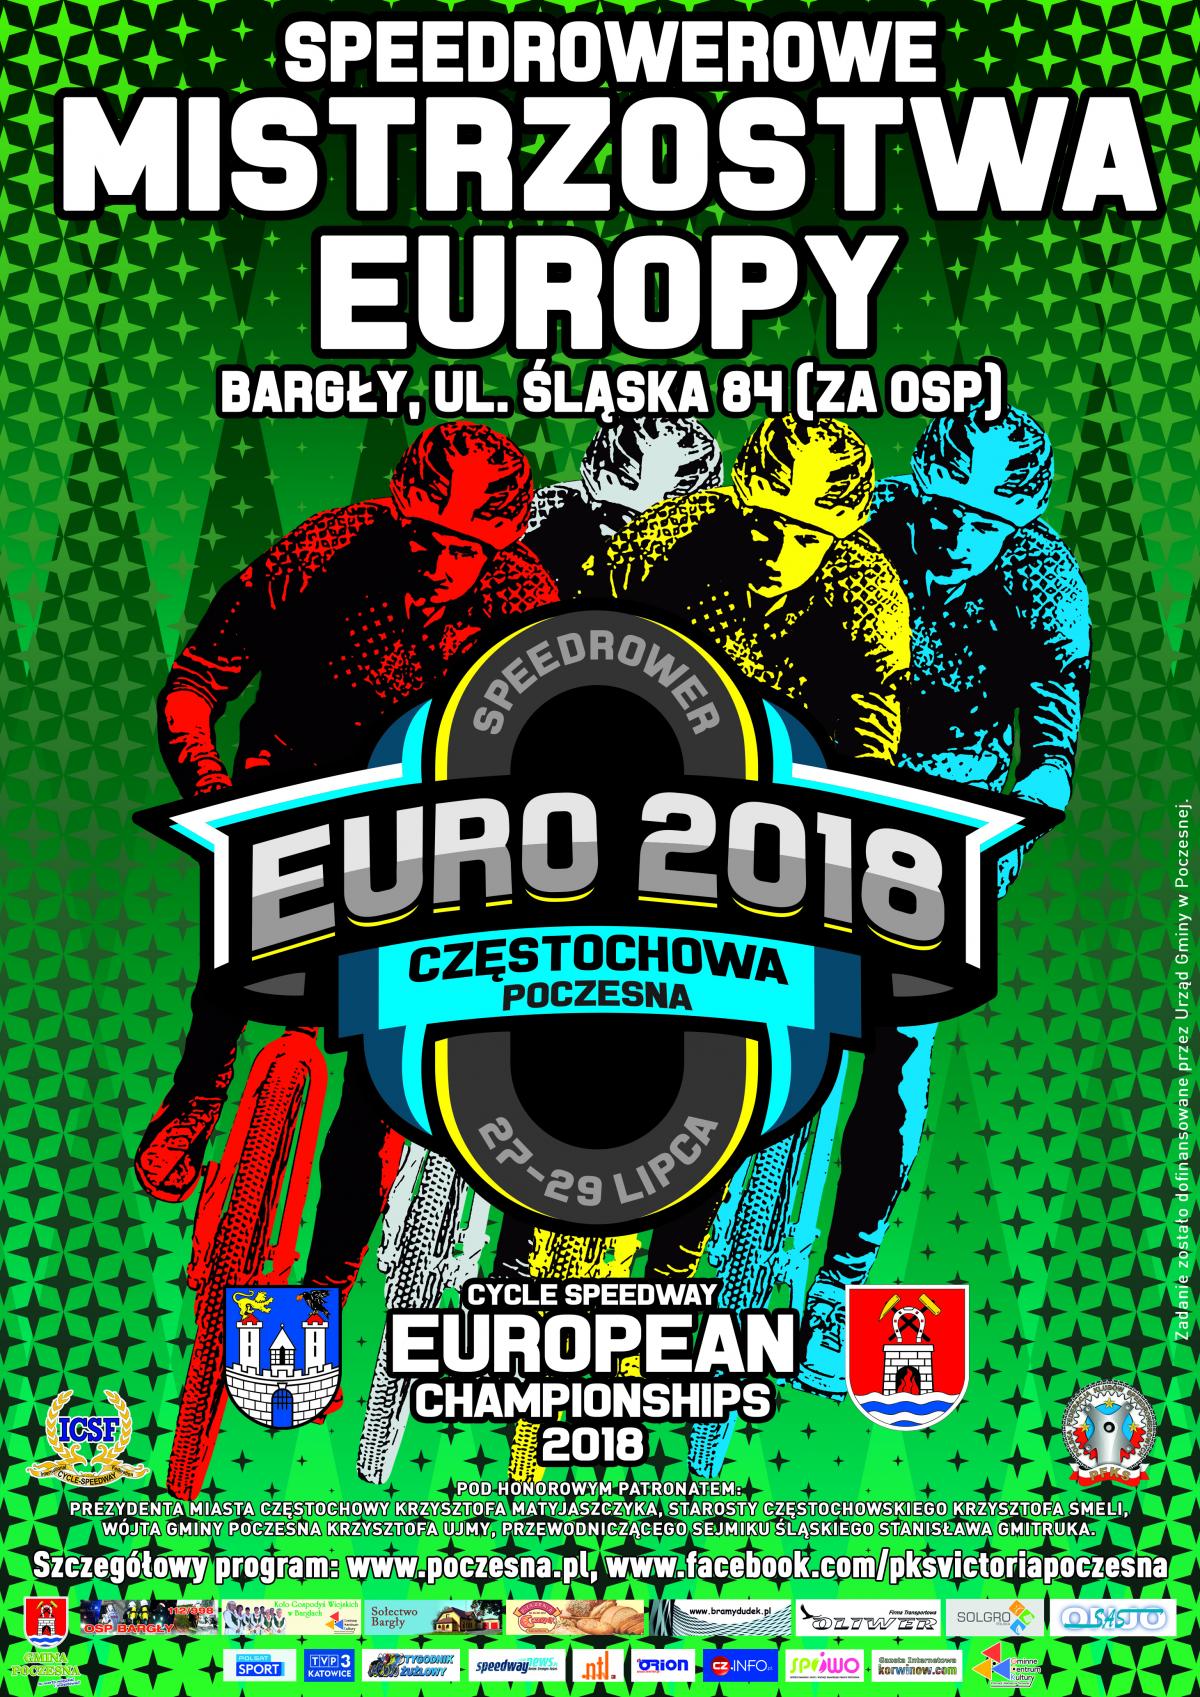 Mistrzostwa Europy w Speedrowerze w Bargłach